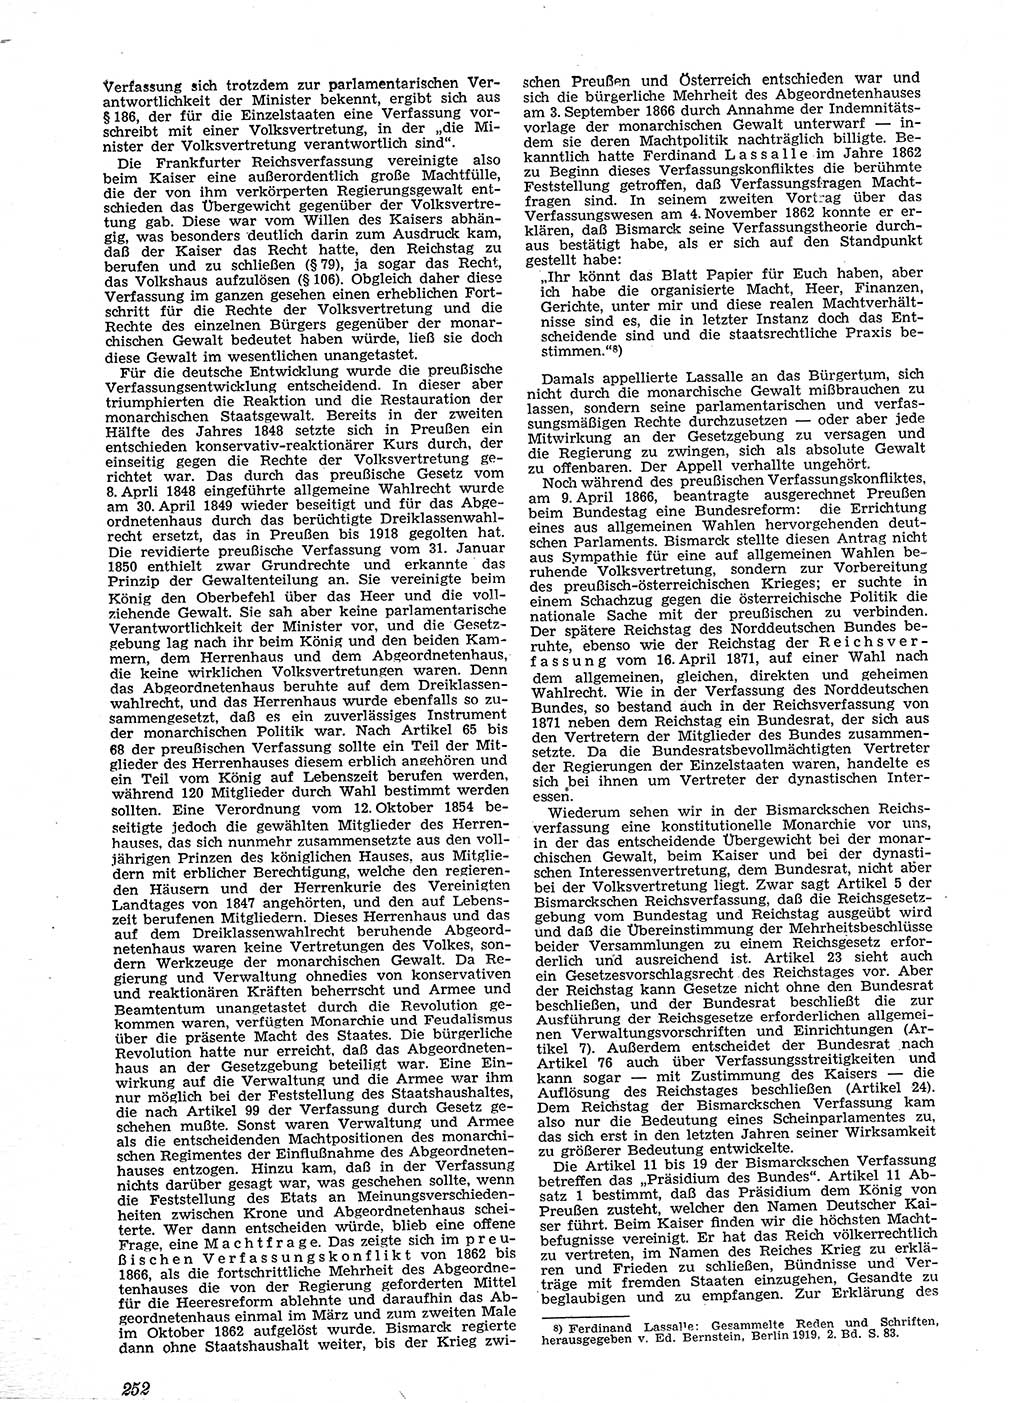 Neue Justiz (NJ), Zeitschrift für Recht und Rechtswissenschaft [Sowjetische Besatzungszone (SBZ) Deutschland], 2. Jahrgang 1948, Seite 252 (NJ SBZ Dtl. 1948, S. 252)